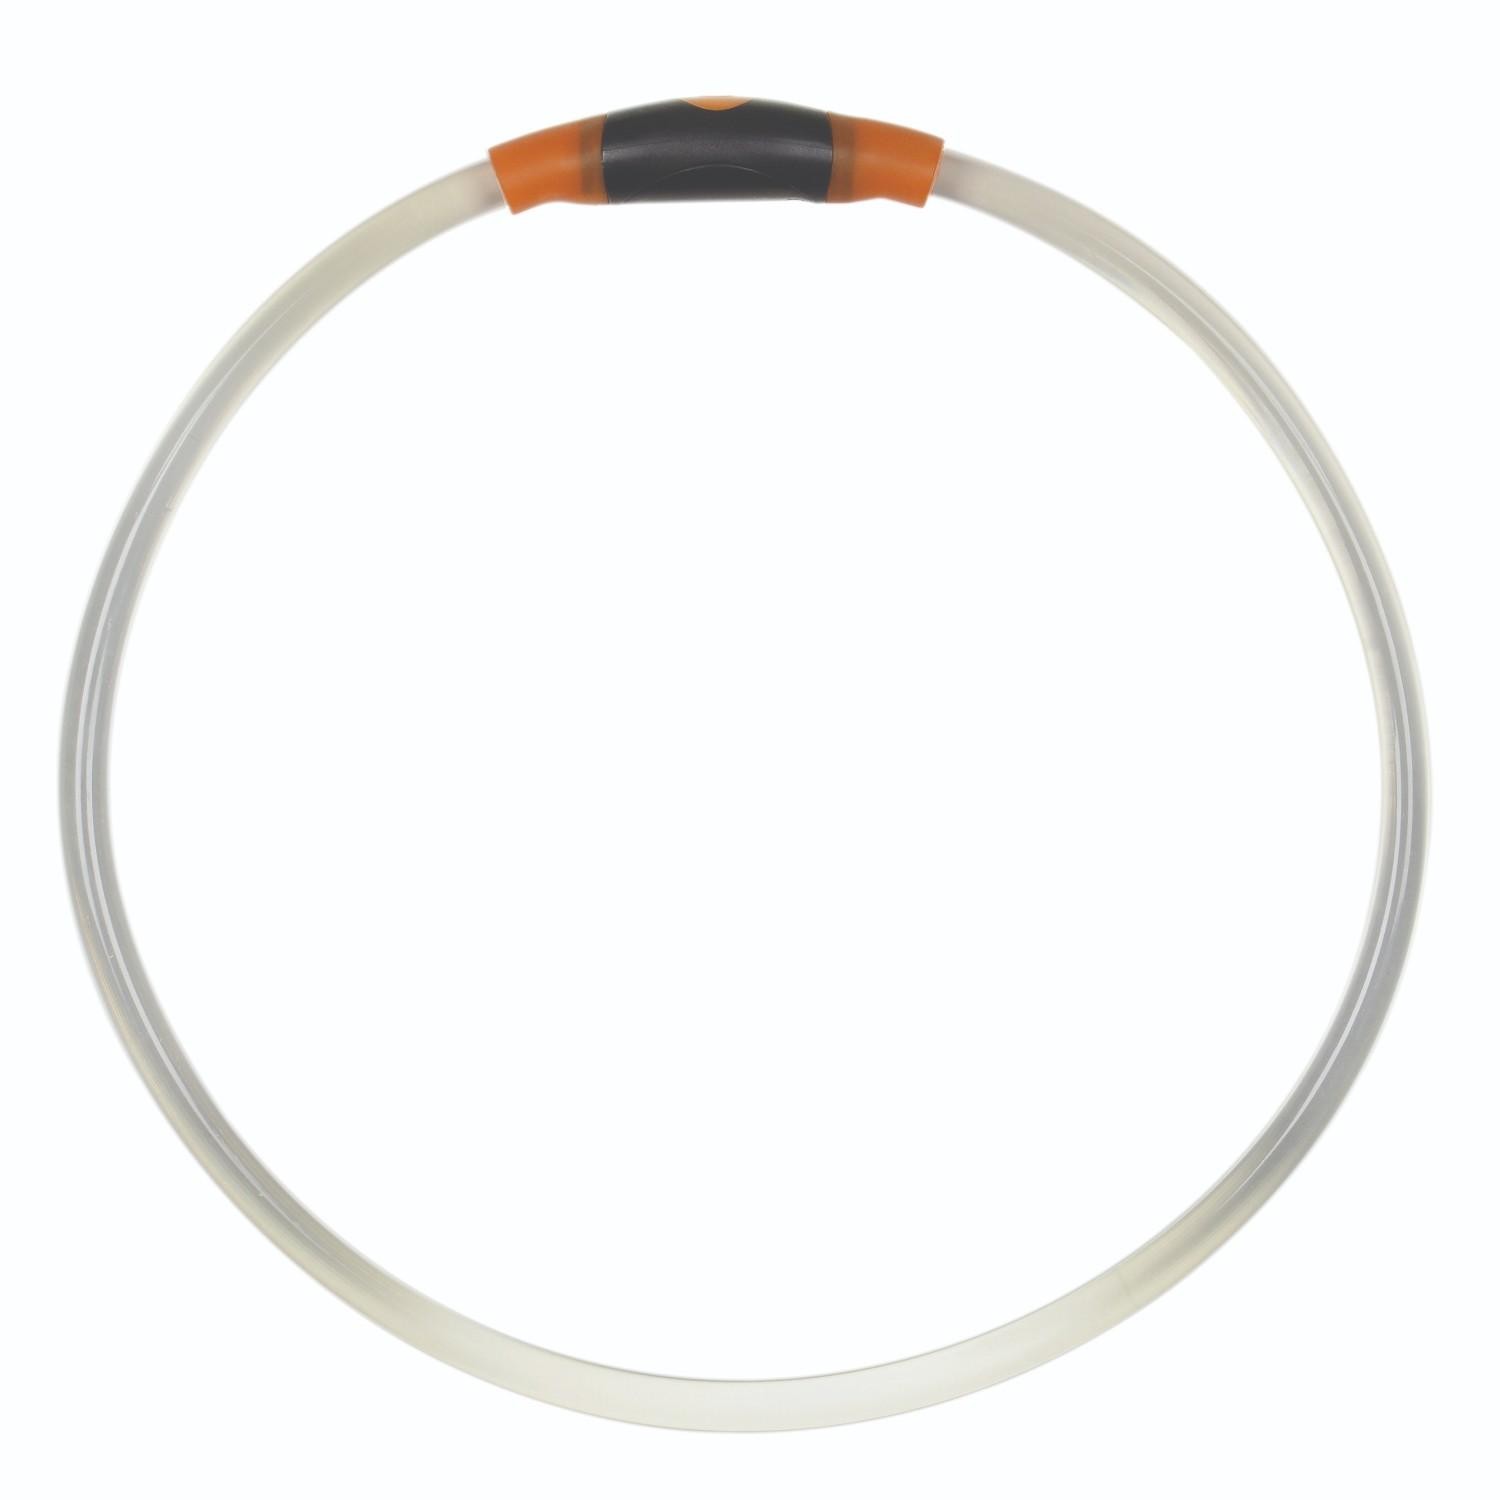 Nite Ize Nitehowl LED Safety Necklace - Orange Orange Universal